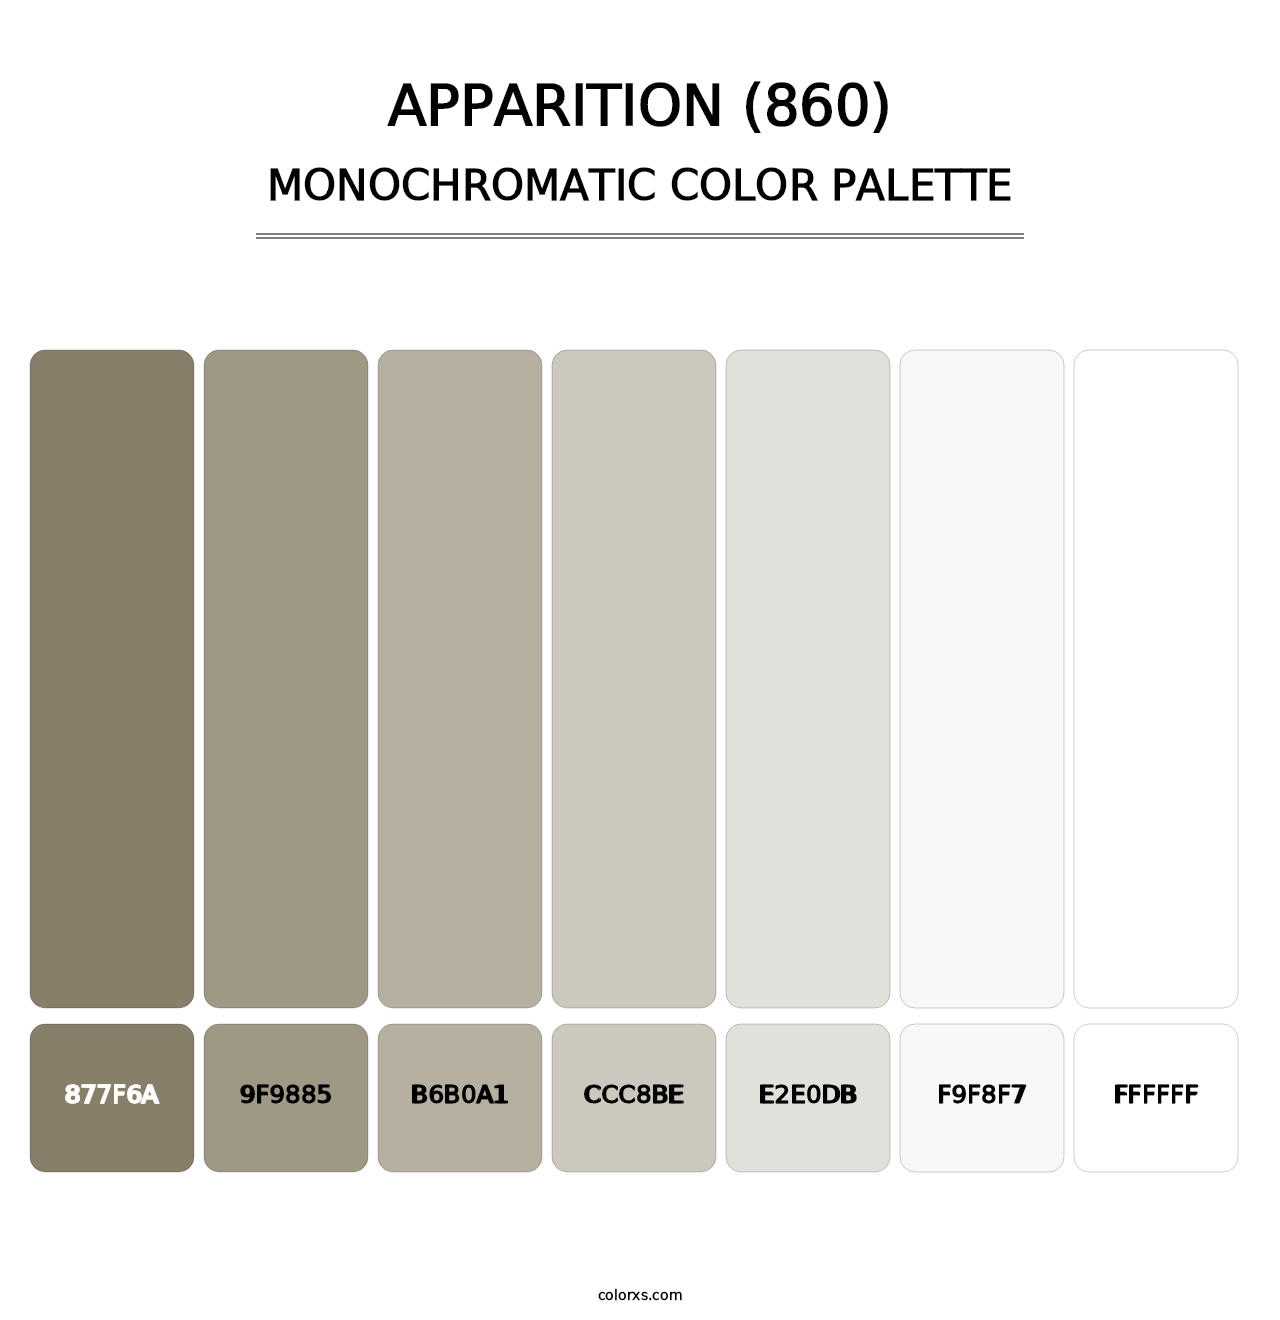 Apparition (860) - Monochromatic Color Palette